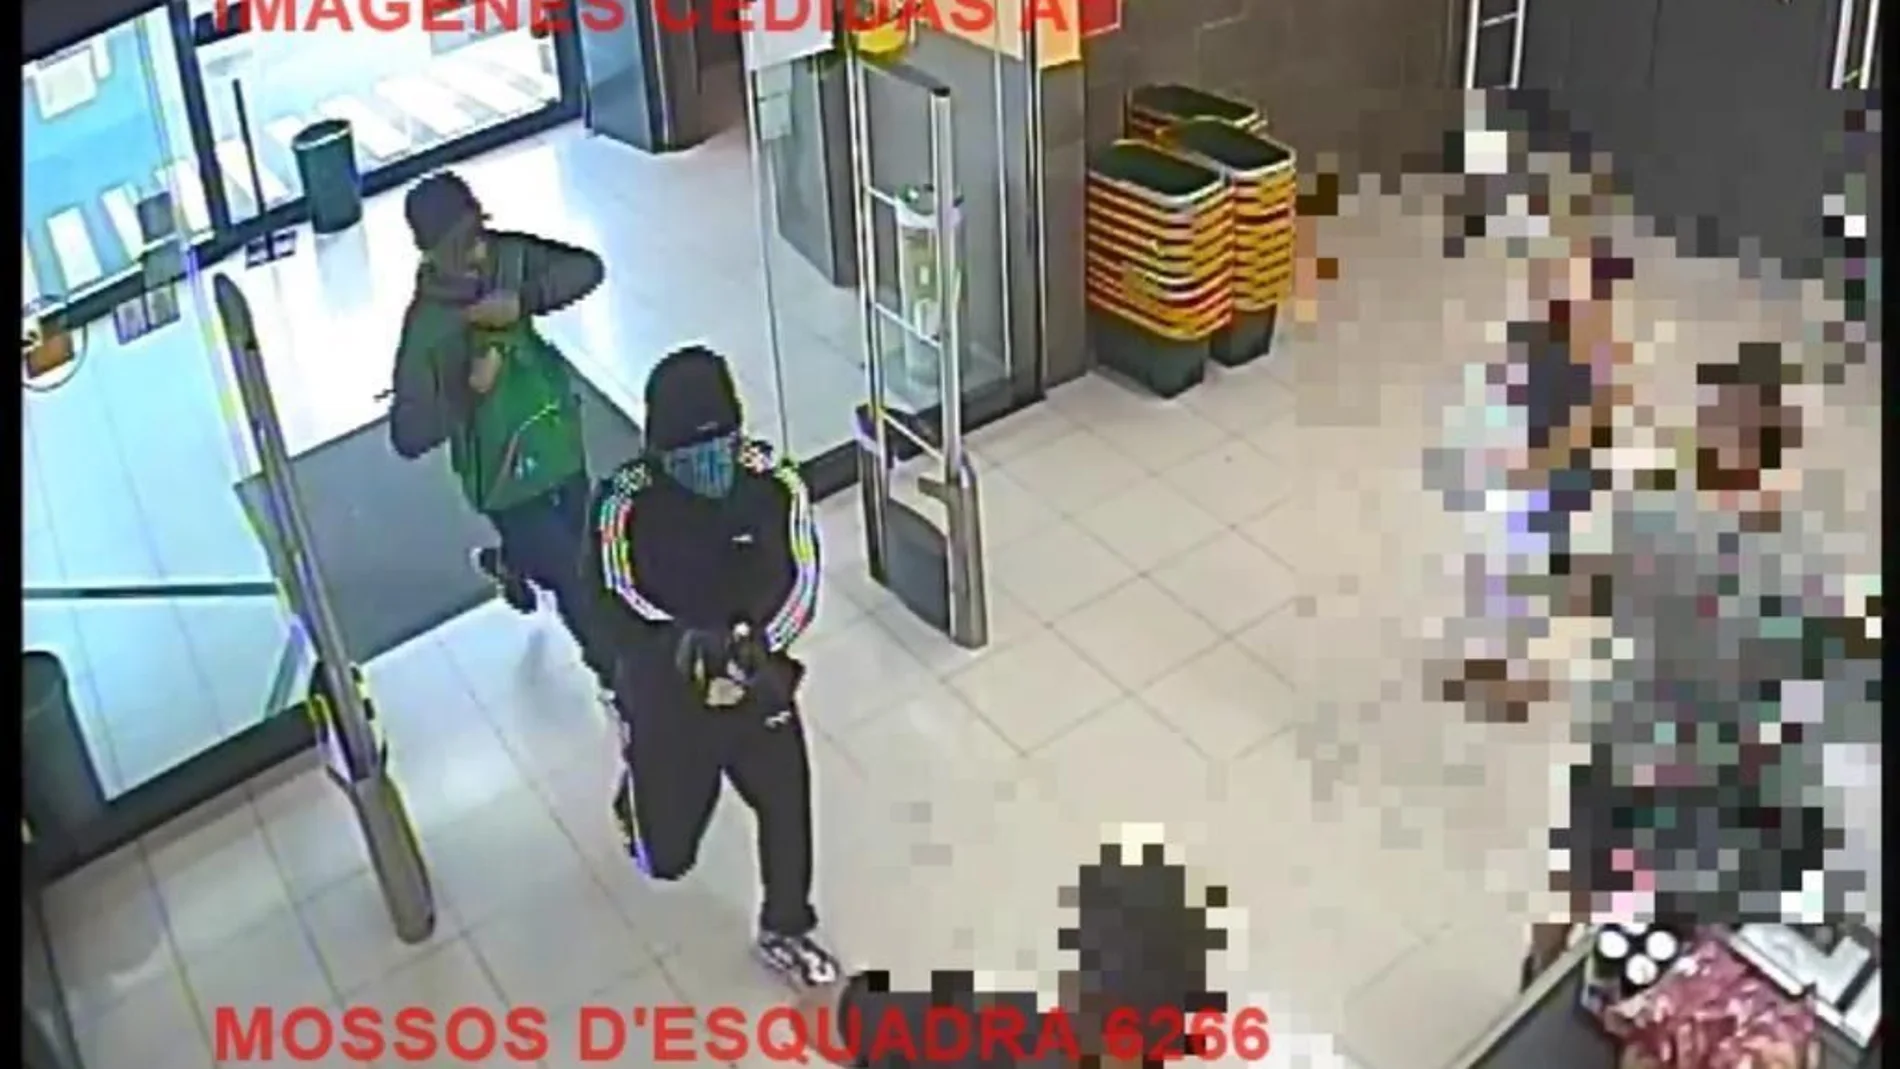 Imagen de los dos hombres entrando al supermercado armados